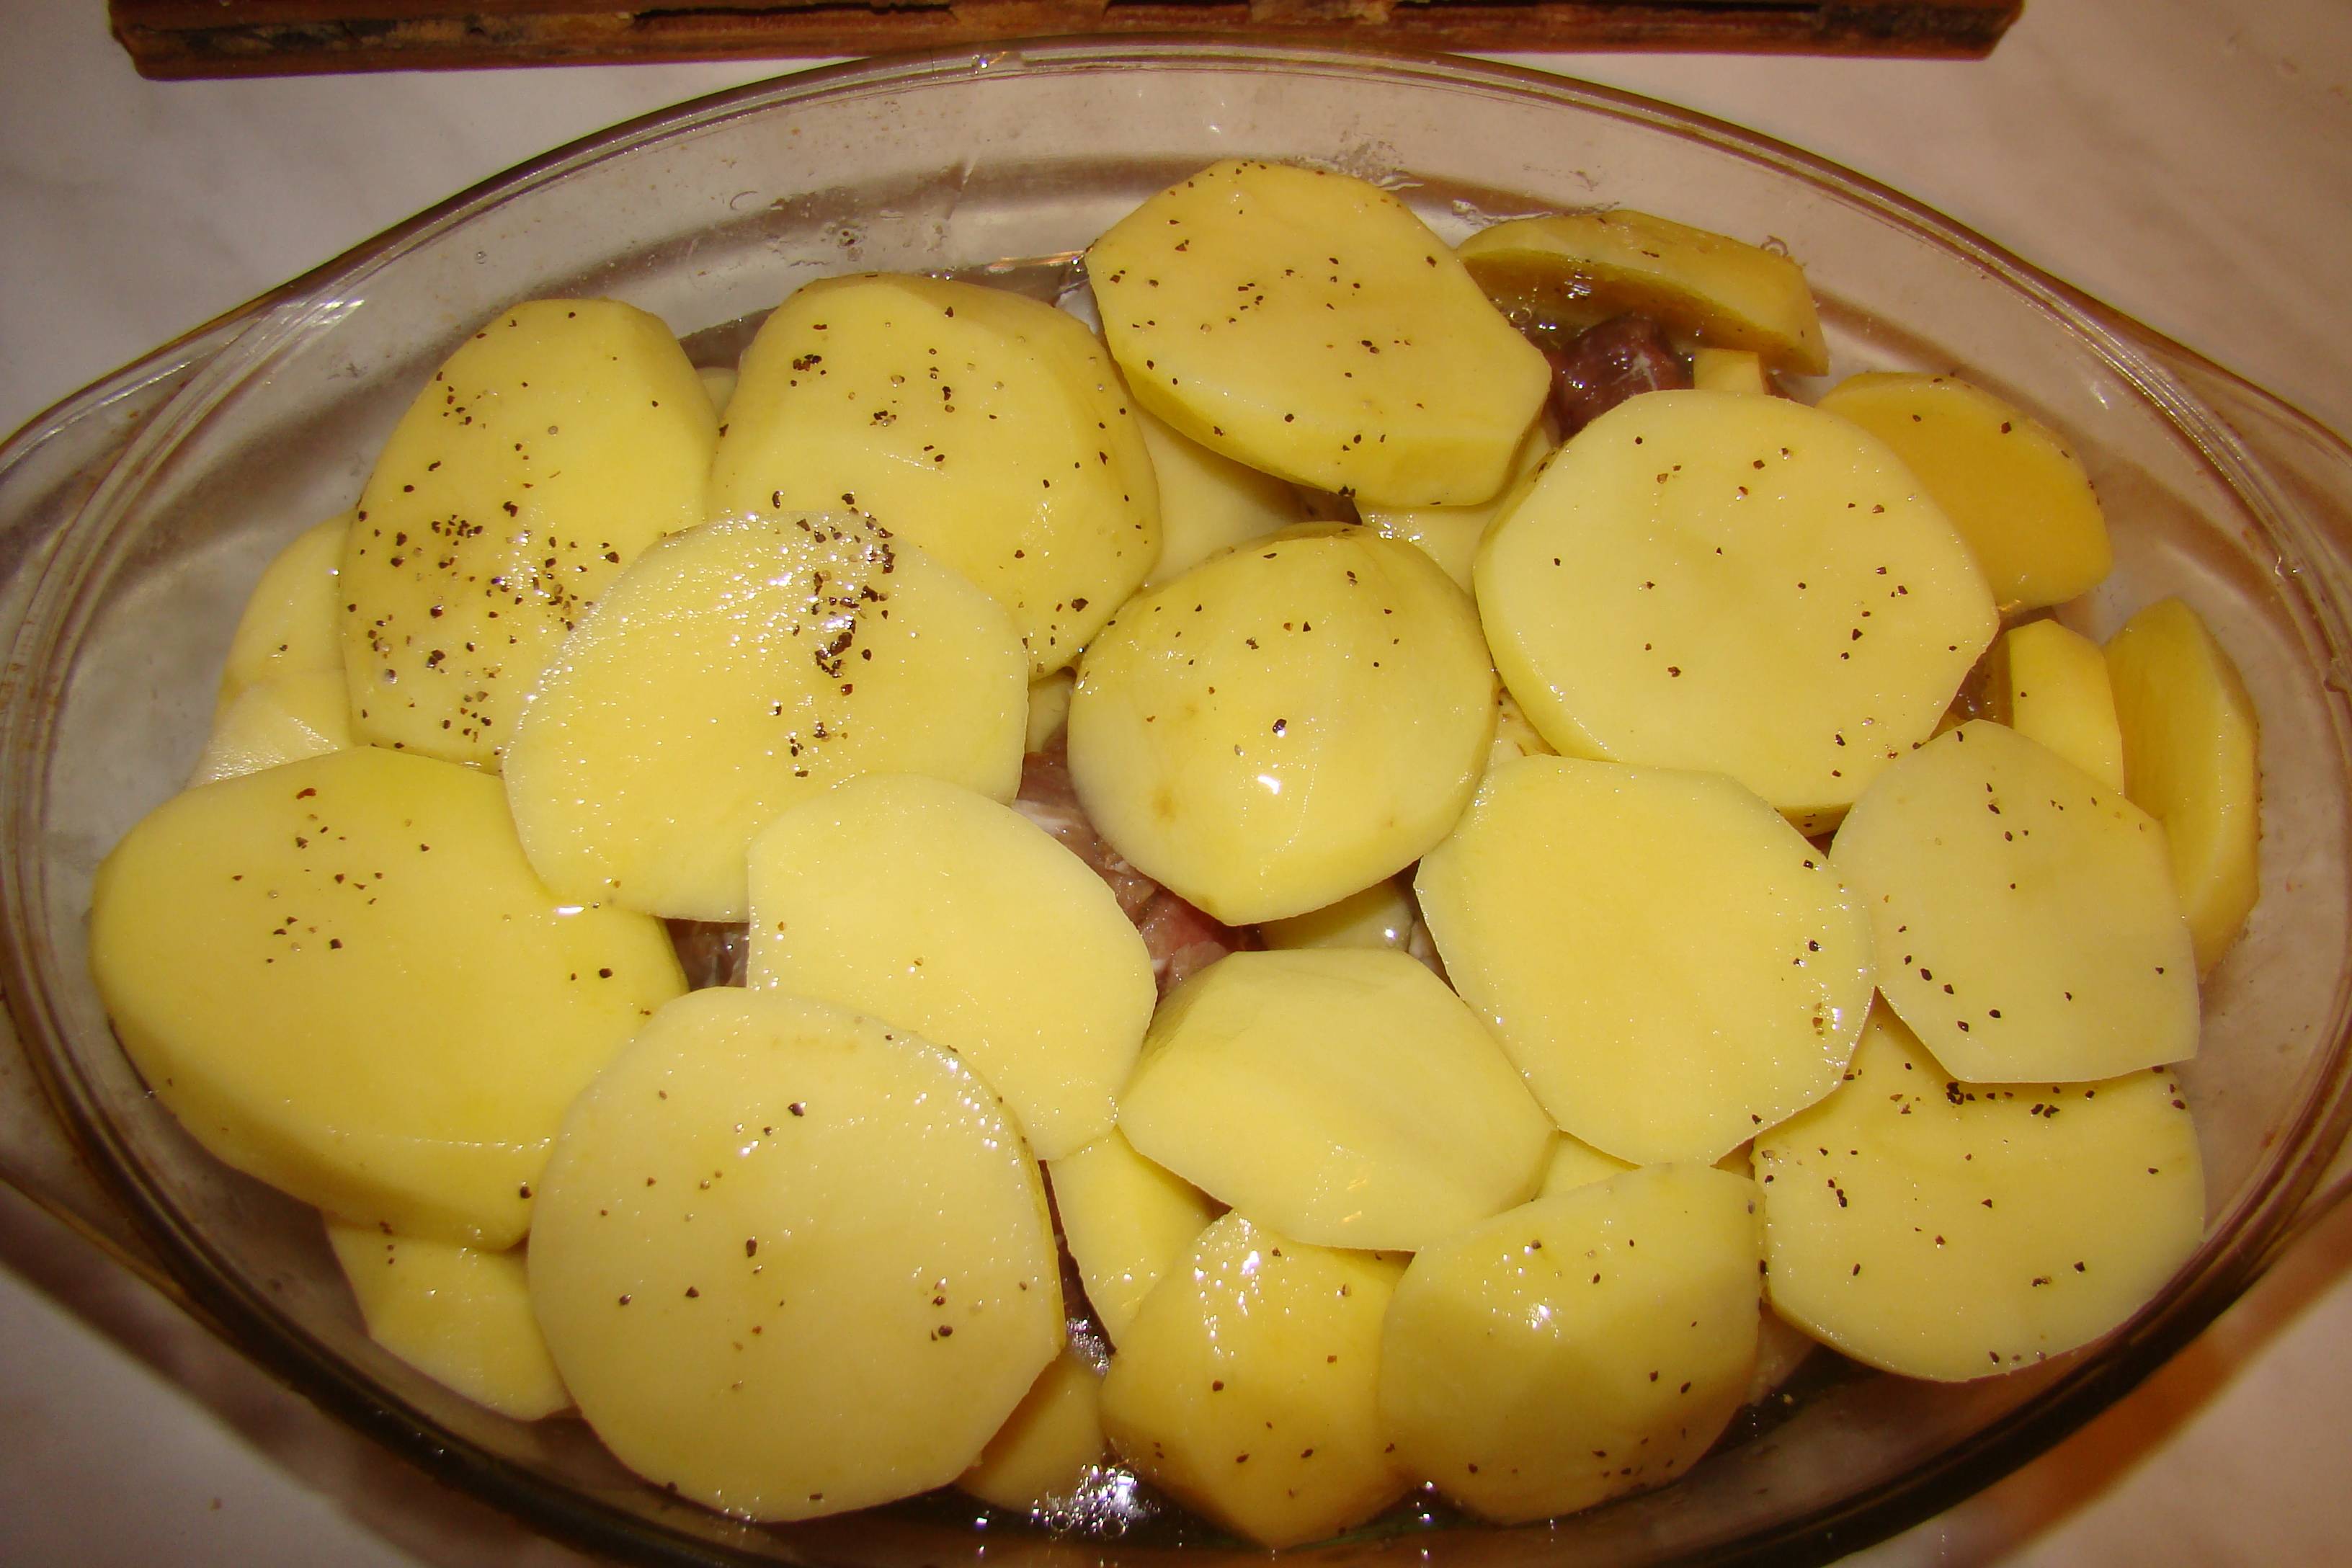 Muschiulet afumat cu cartofi la cuptor